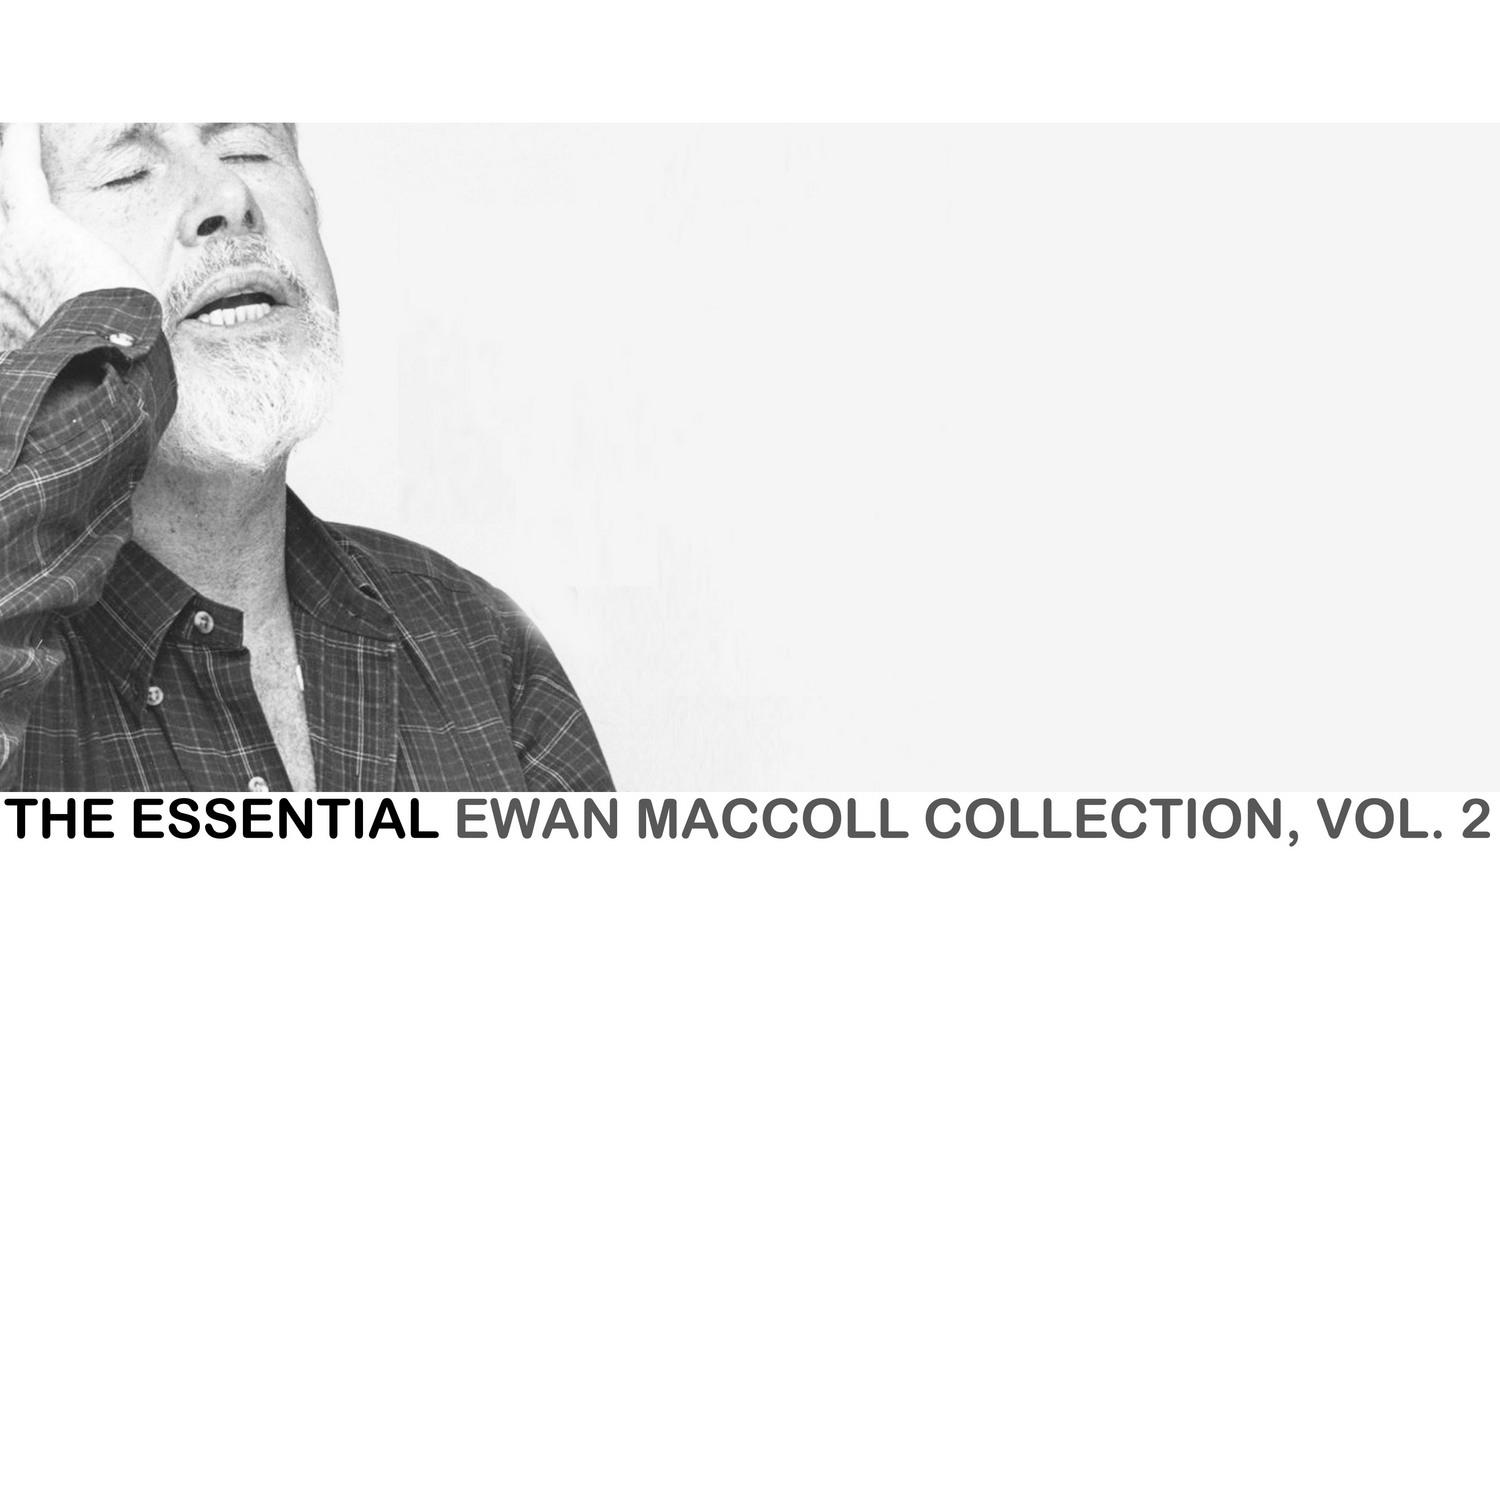 The Essential Ewan Maccoll Collection, Vol. 2